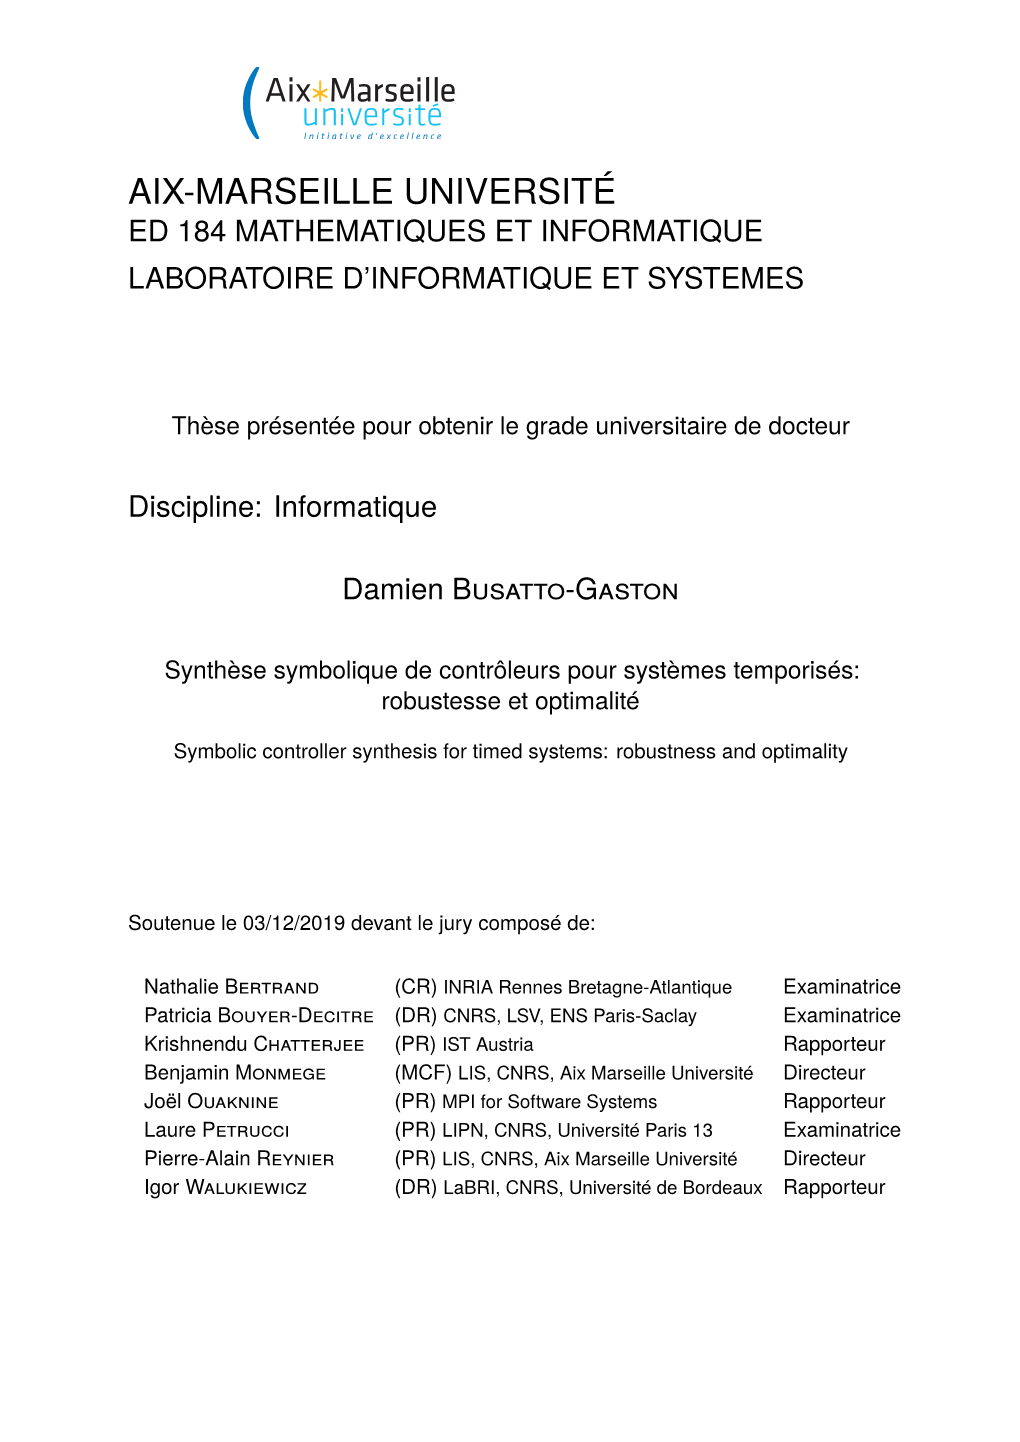 Aix-Marseille Université Ed 184 Mathematiques Et Informatique Laboratoire D’Informatique Et Systemes